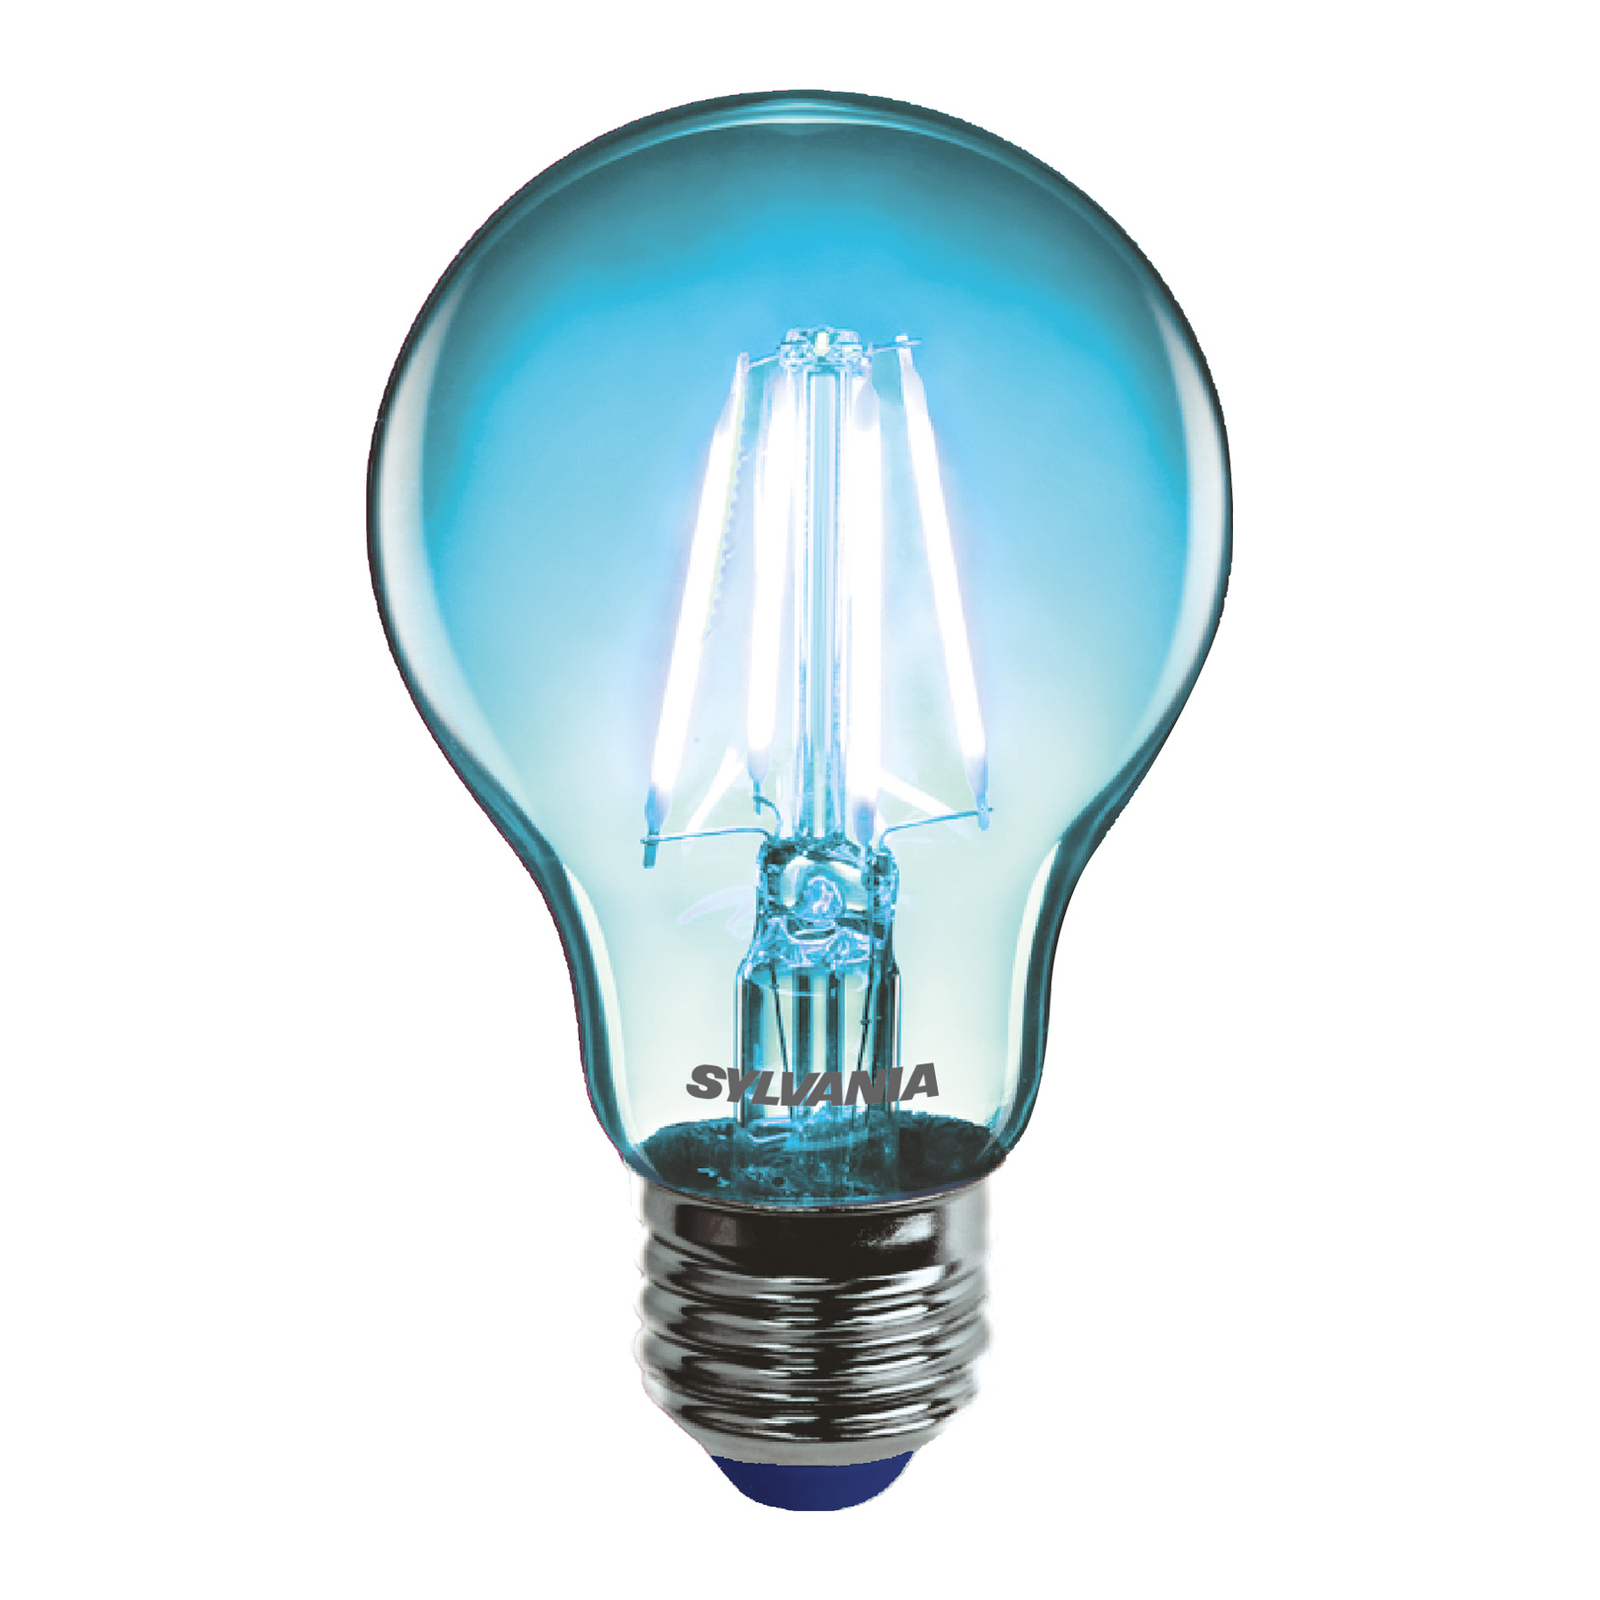 Sylvania ToLEDo rétro ampoule LED E27 4,1 W bleue